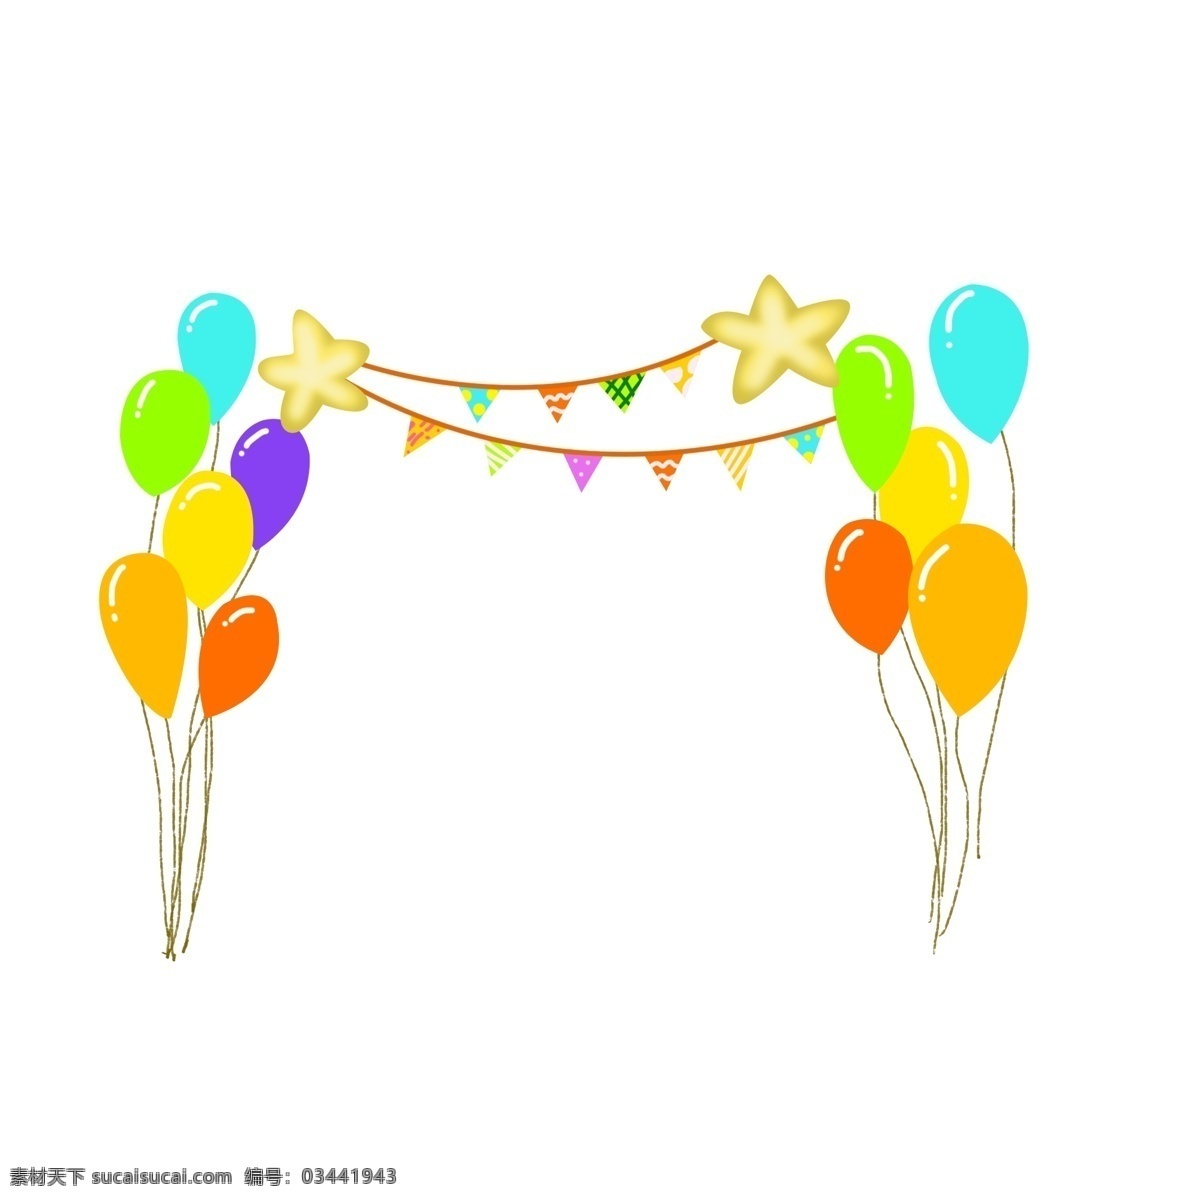 节日 彩色 气球 背景 装饰 节日气球 彩色气球 儿童节 节日背景装饰 气球装饰 彩旗